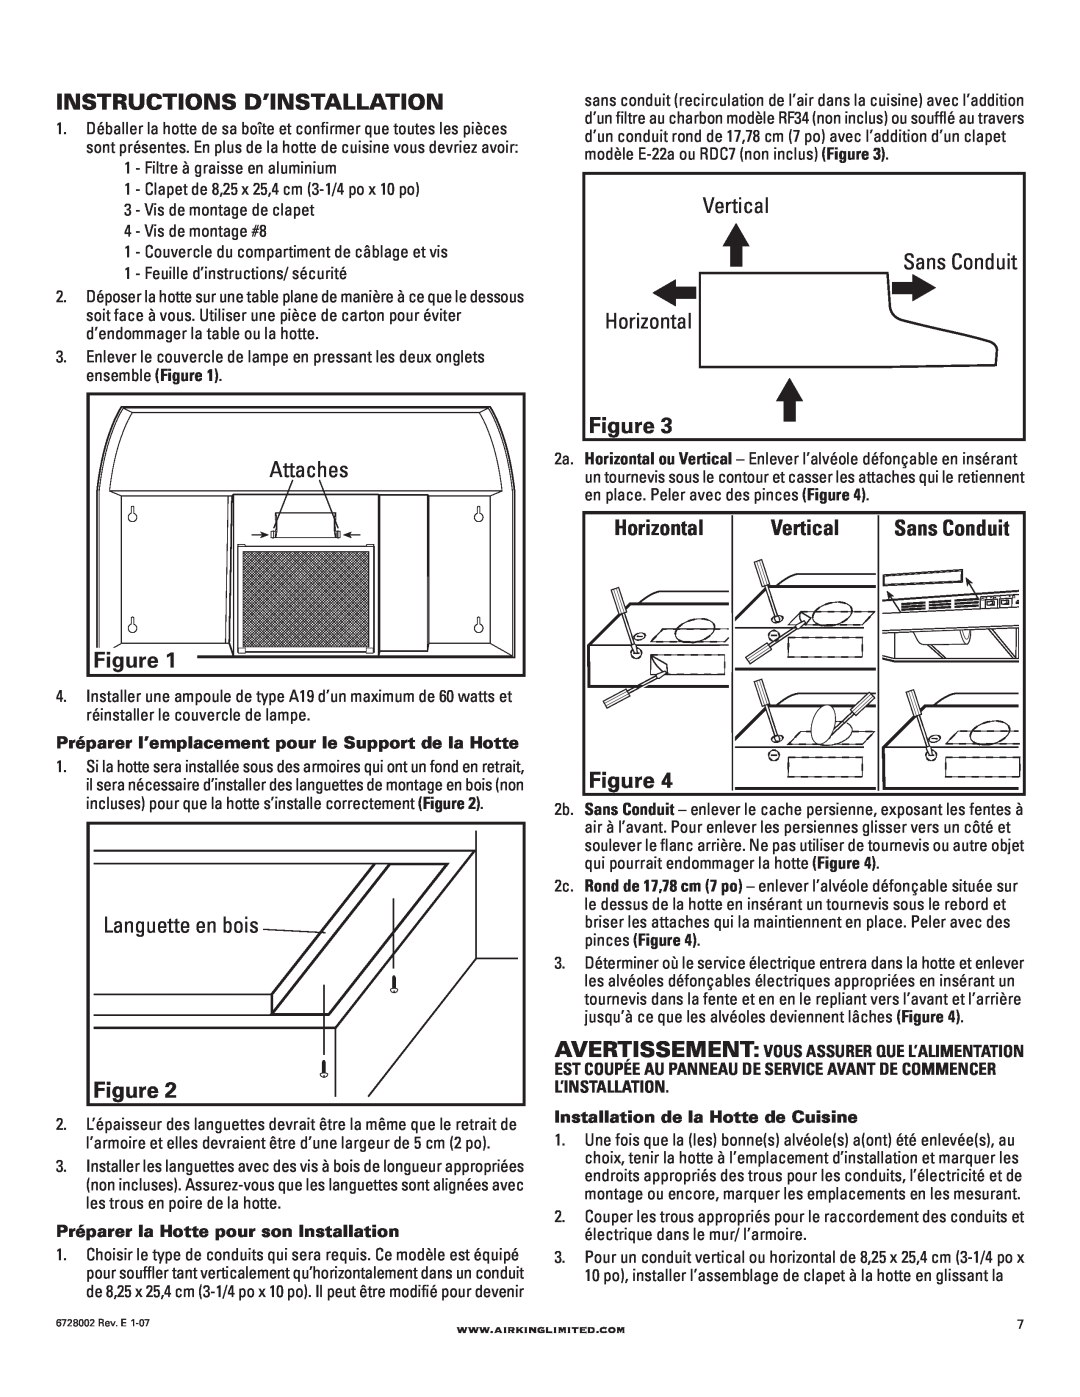 Air King Ventilation Hood Instructions D’Installation, Attaches, Languette en bois, Vertical, Sans Conduit, Horizontal 